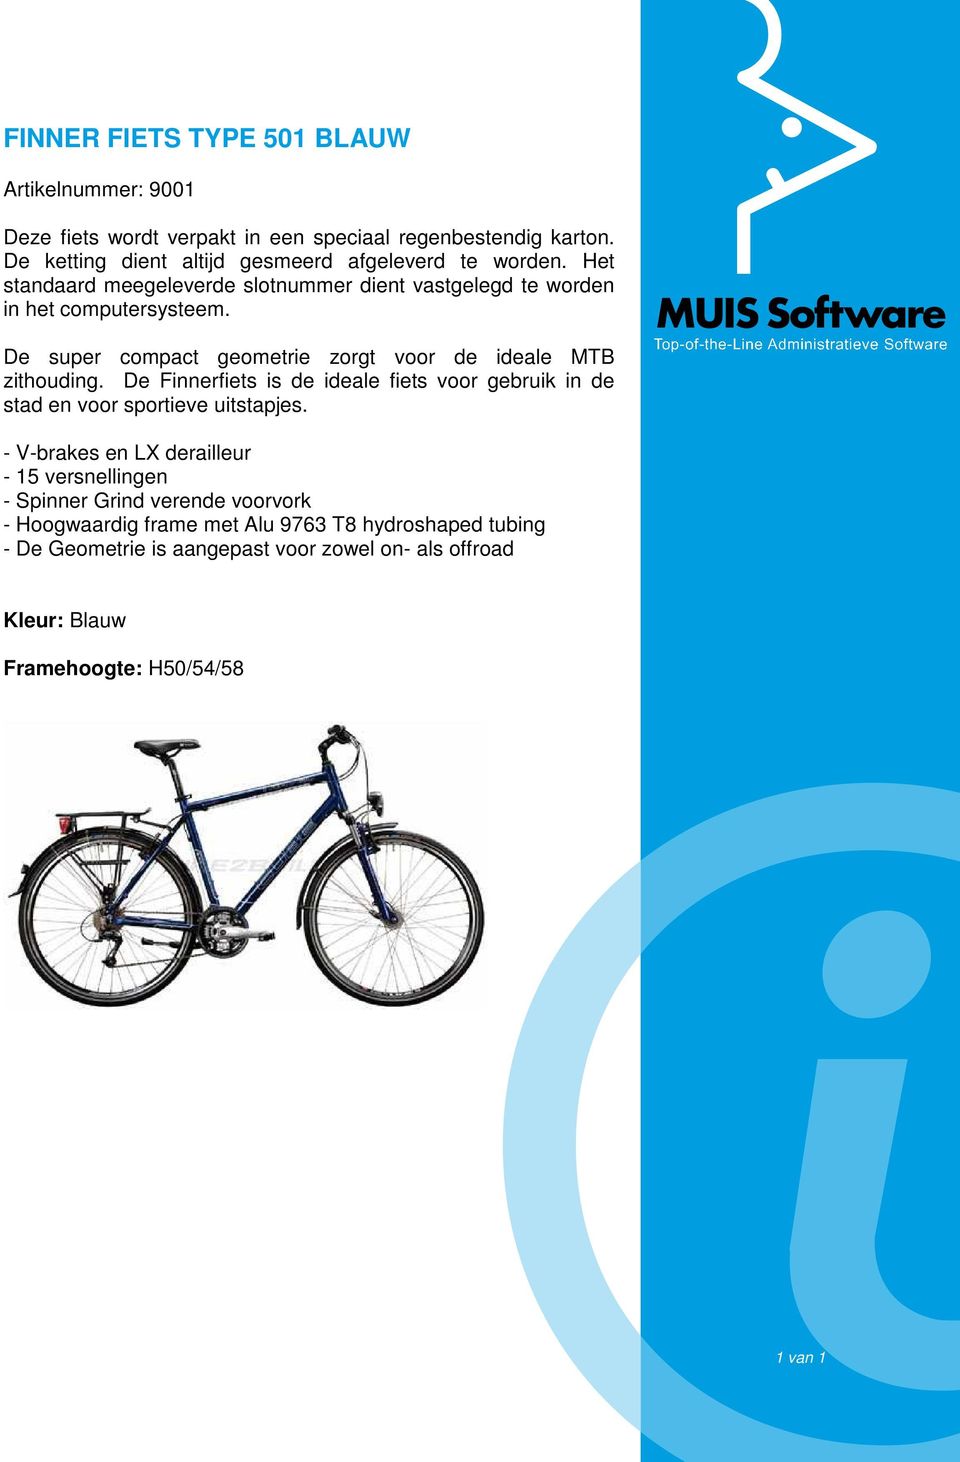 De super compact geometrie zorgt voor de ideale MB zithouding. De Finnerfiets is de ideale fiets voor gebruik in de stad en voor sportieve uitstapjes.